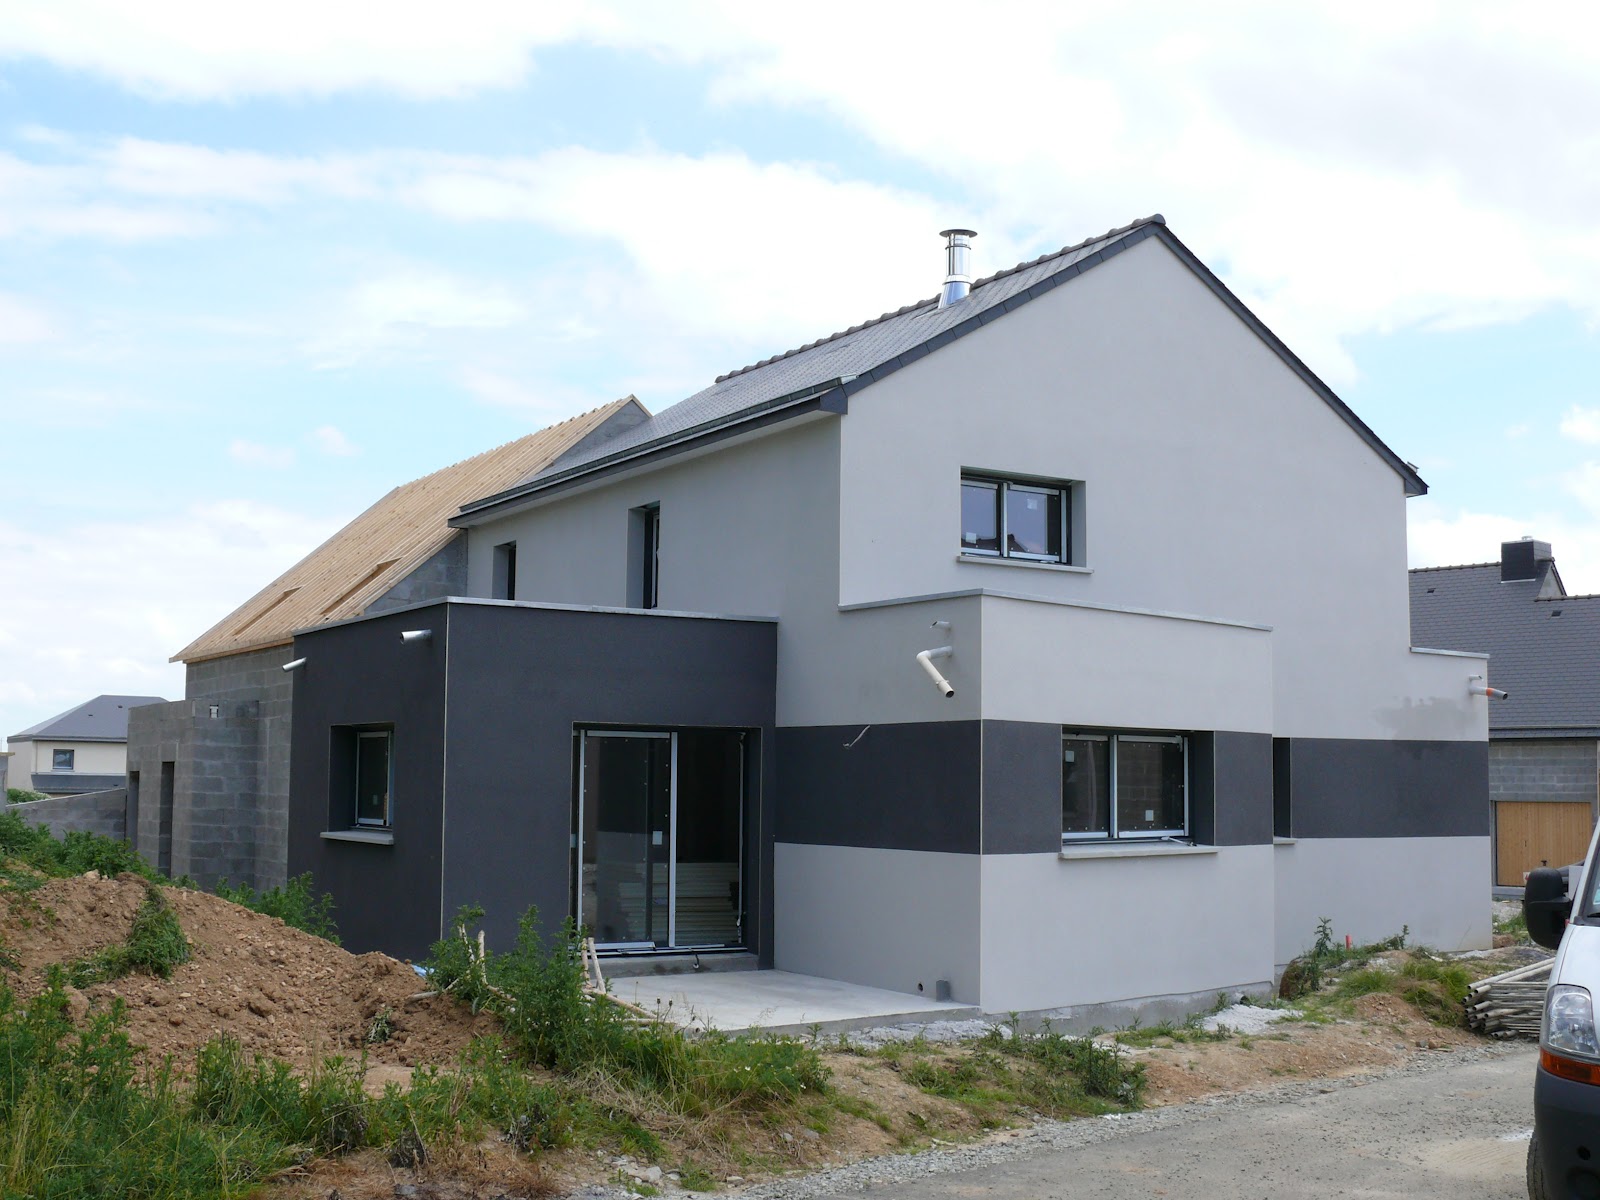 Notre maison à Chateaugiron 23 Juin 2012 Enduit terminé